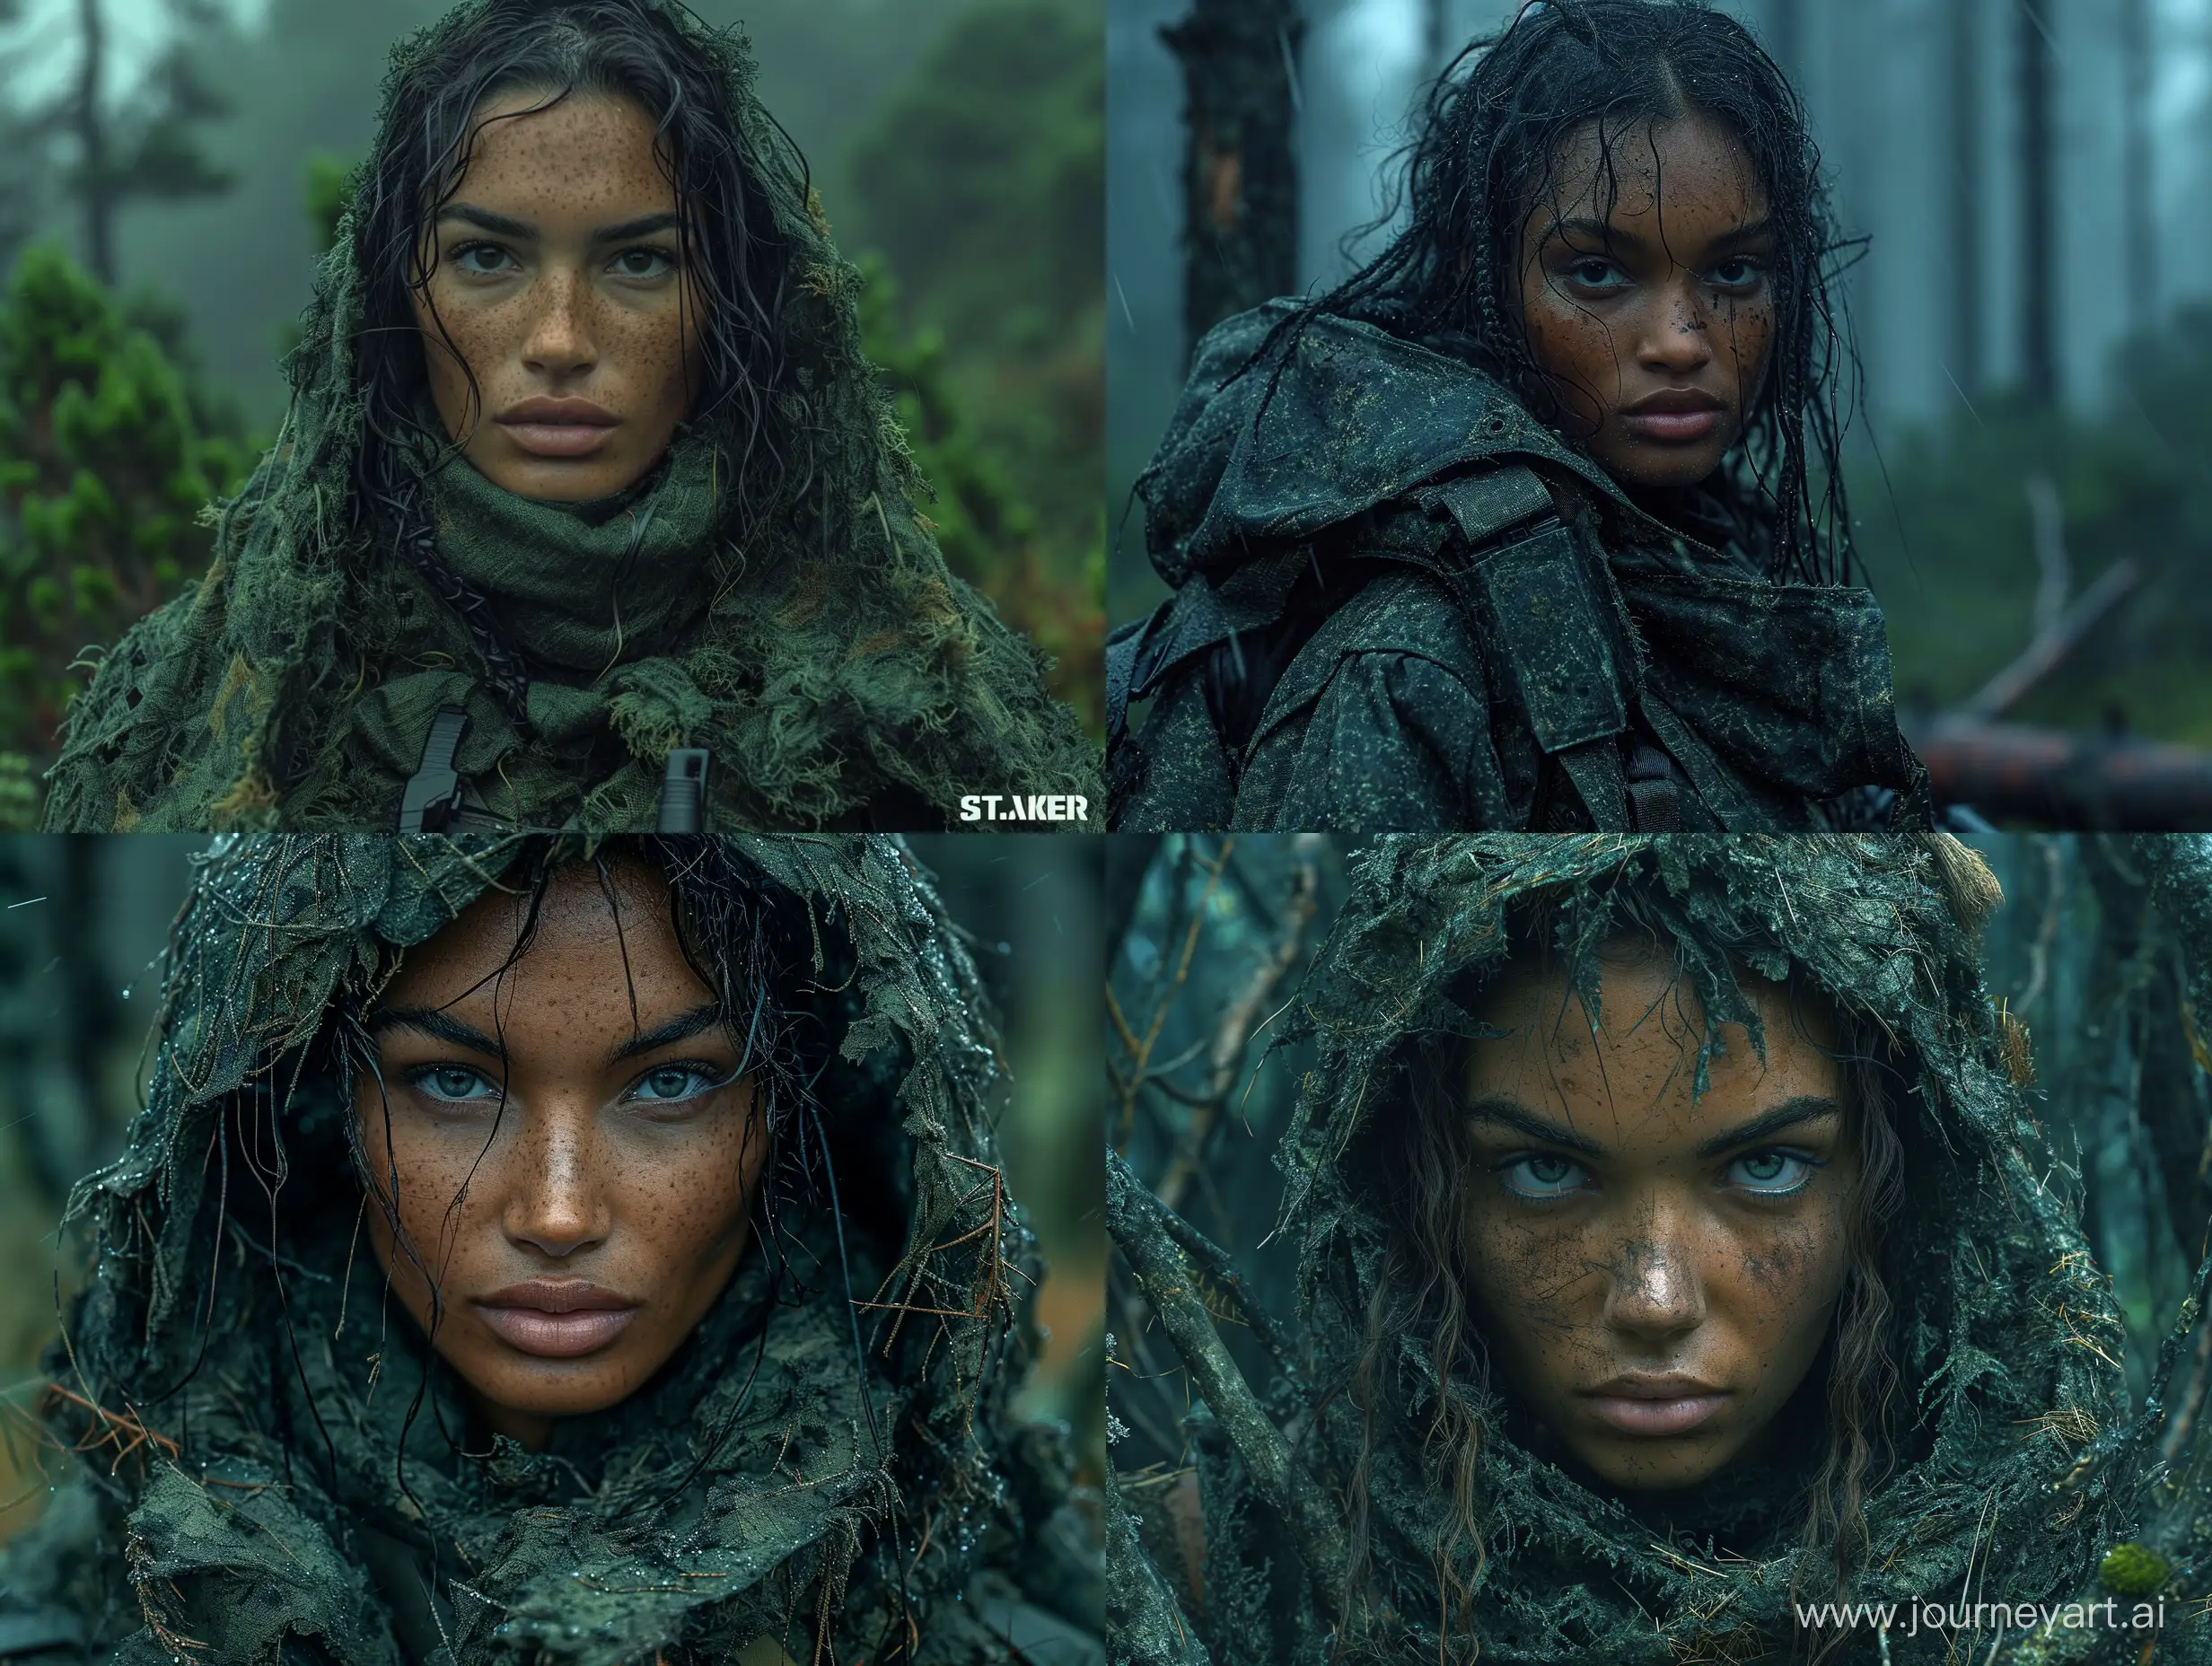 Stunning-Mulatto-Female-STALKER-Mercenary-in-Dark-Green-Ghillie-Suit-Amidst-Dead-Trees-in-a-Dark-Forest